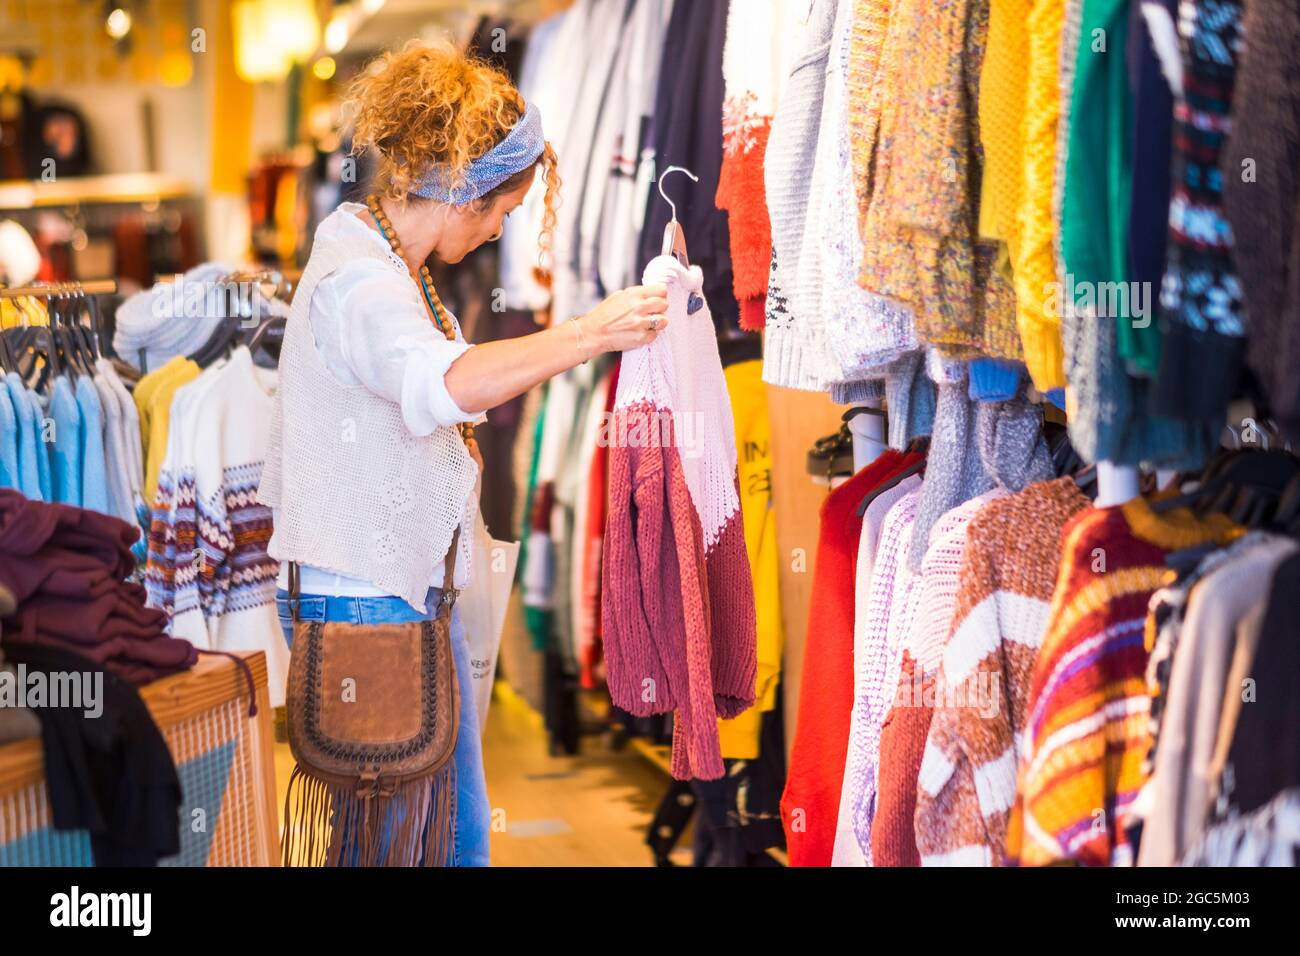 Mujer de una tienda de ropa en actividad comercial - moda moda estilo de vida personas - concepto de ventas ocasión descuento centro comercial c Fotografía de stock -